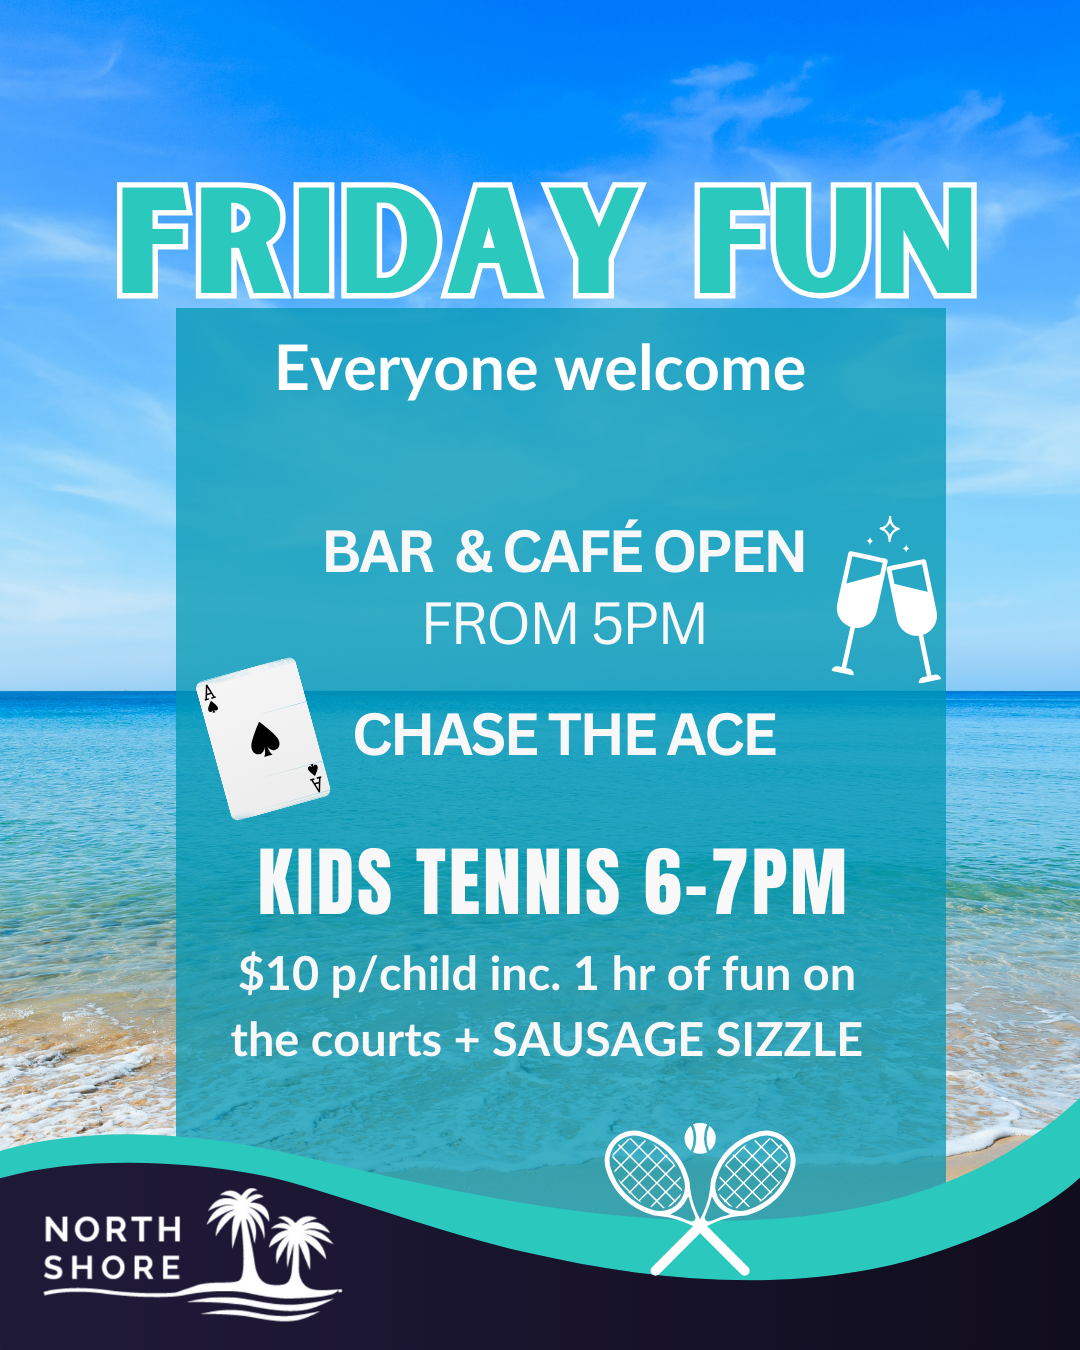 North Shore - Fun Friday Event